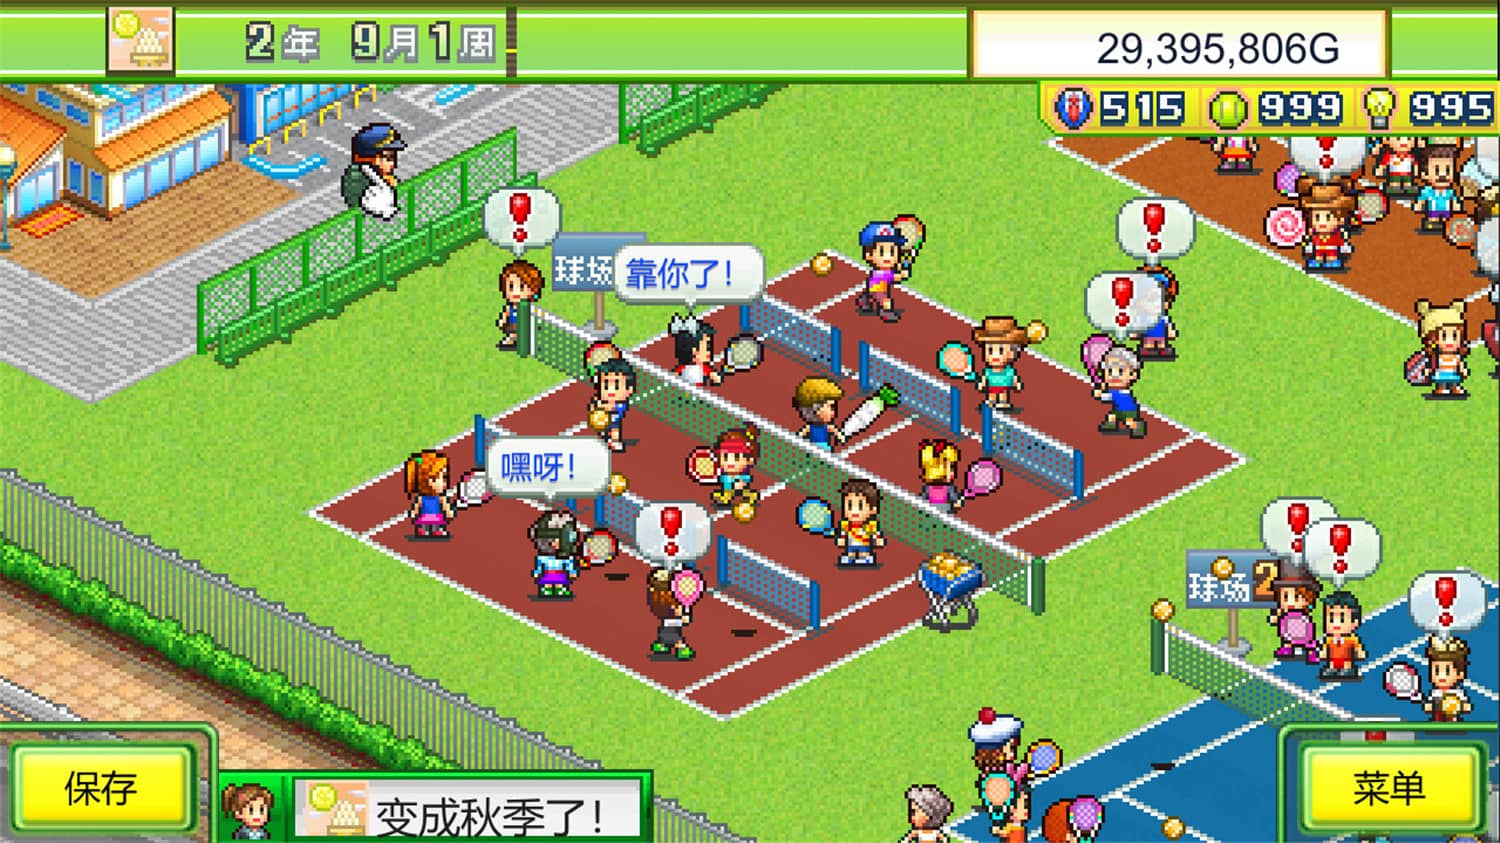 网球俱乐部物语/Tennis Club Story【v2.06|容量211MB|官方简体中文】